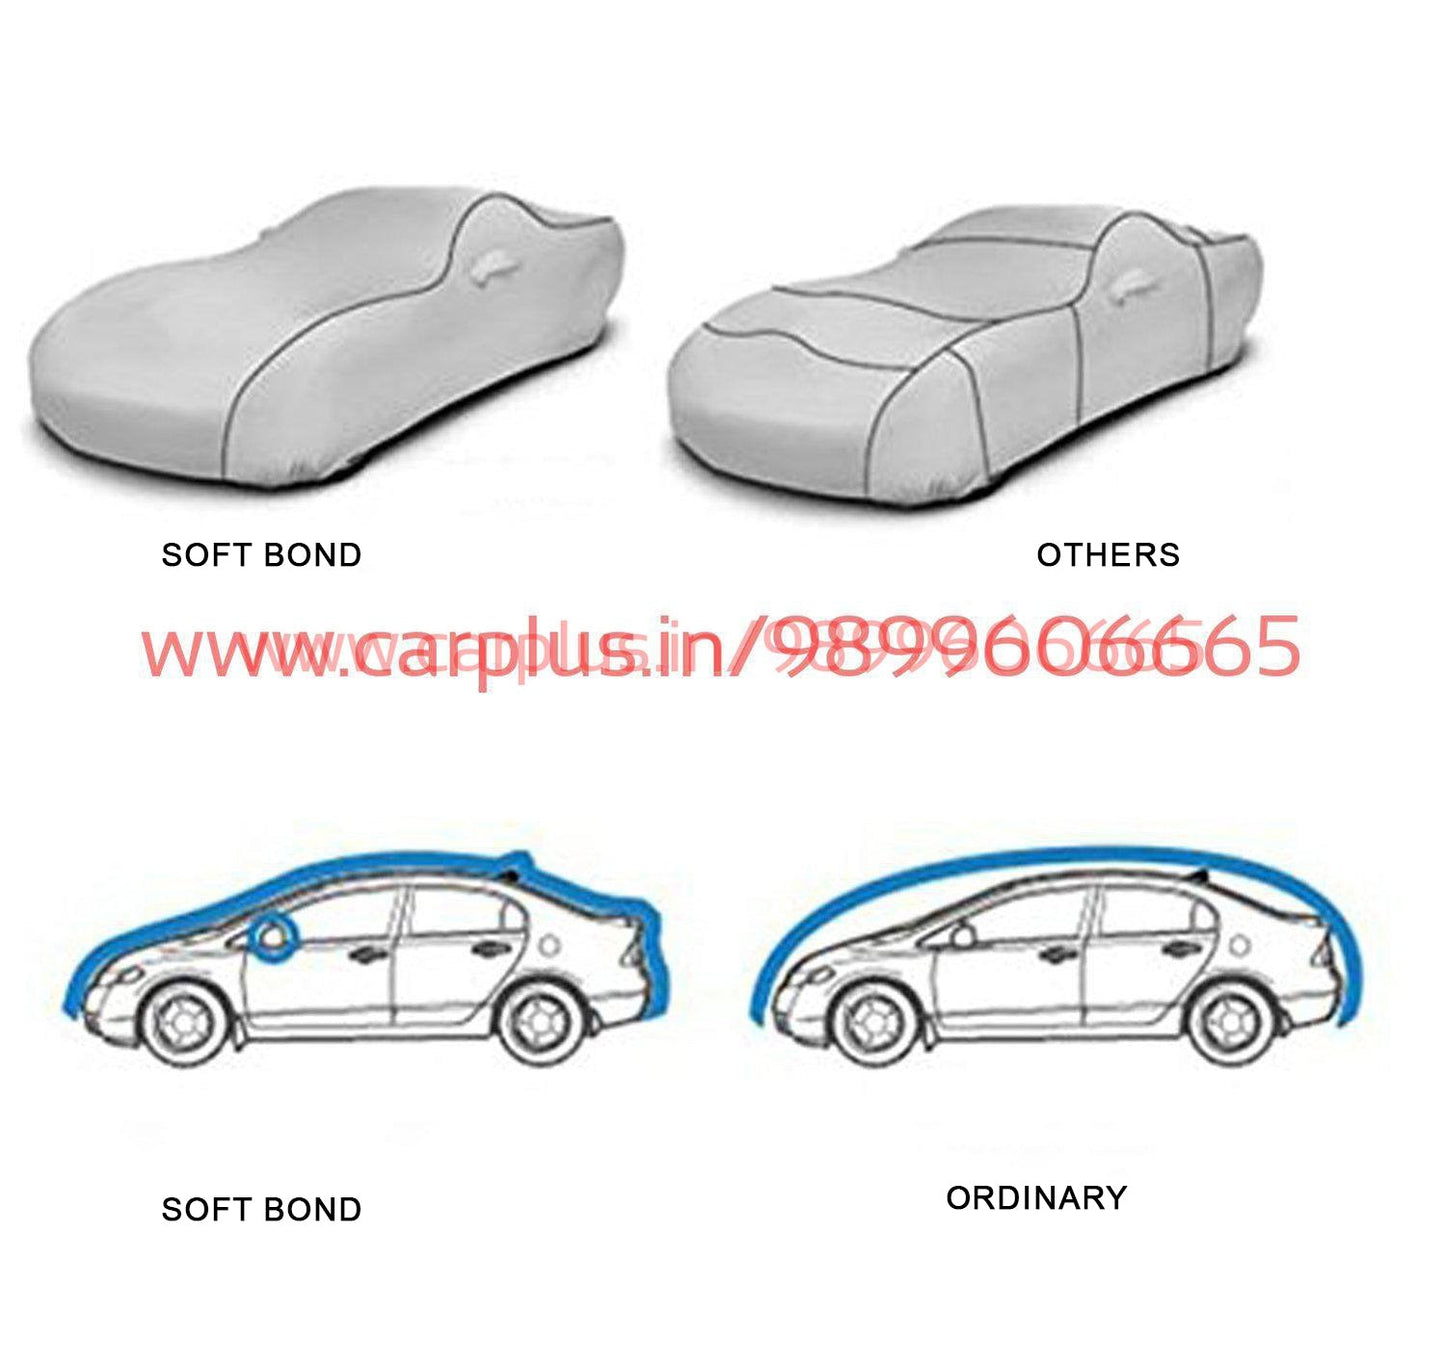 
                  
                    Soft Bond Body Cover for Jeep Compass(Grey)-Body Cover-SOFT BOND-CARPLUS
                  
                